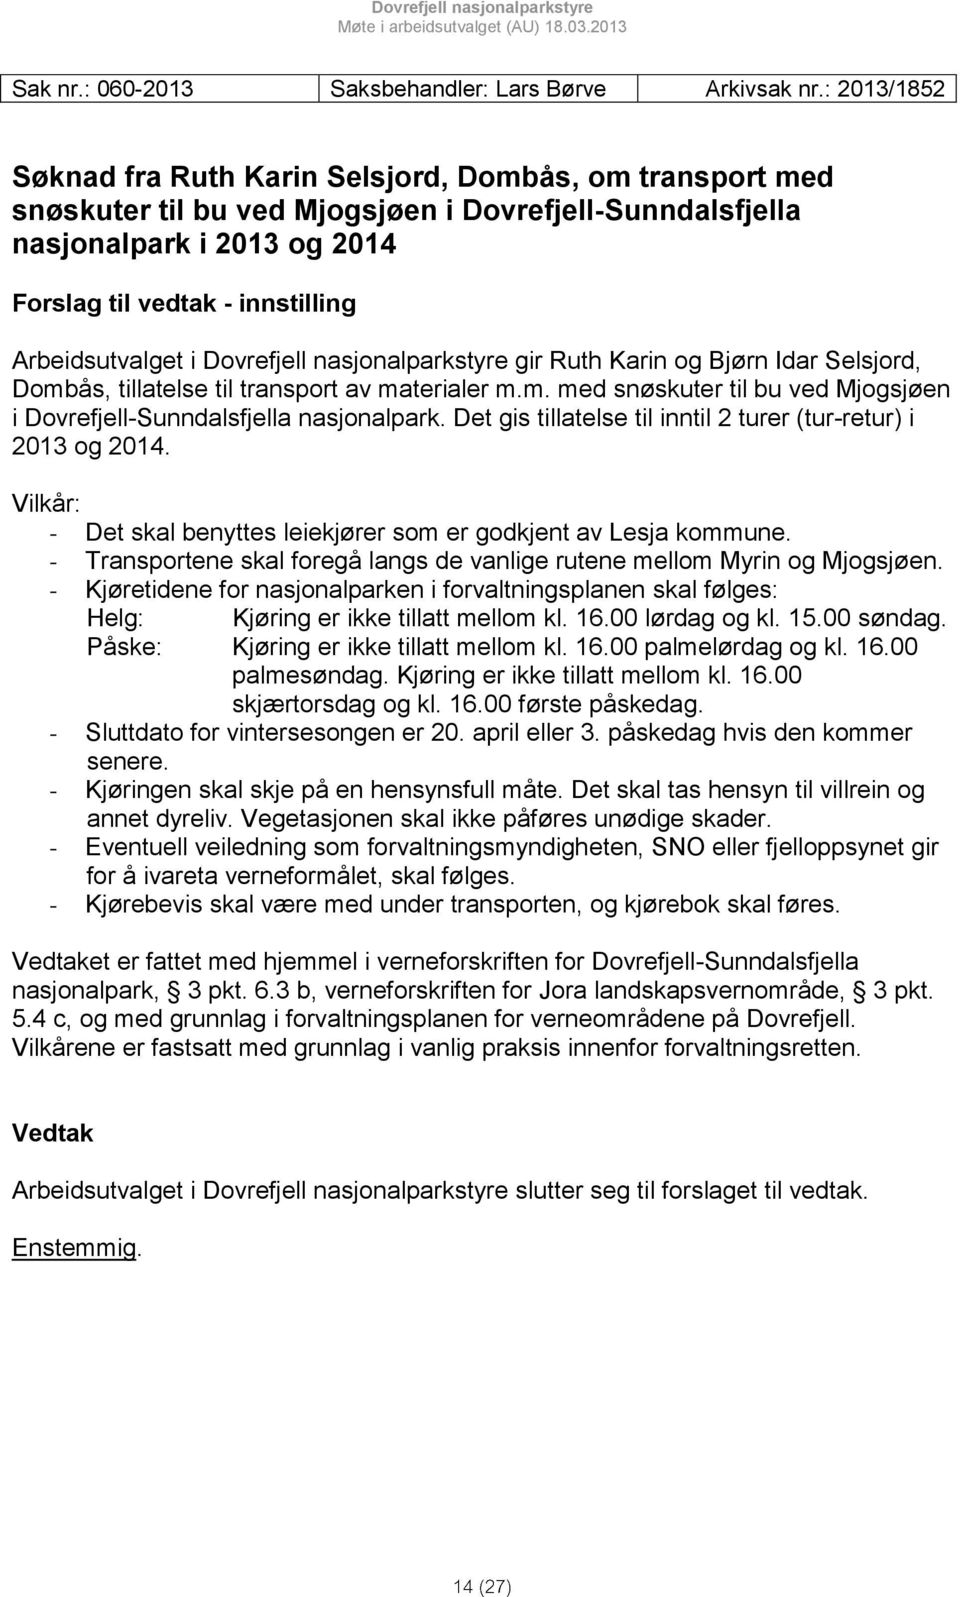 Arbeidsutvalget i Dovrefjell nasjonalparkstyre gir Ruth Karin og Bjørn Idar Selsjord, Dombås, tillatelse til transport av materialer m.m. med snøskuter til bu ved Mjogsjøen i Dovrefjell-Sunndalsfjella nasjonalpark.